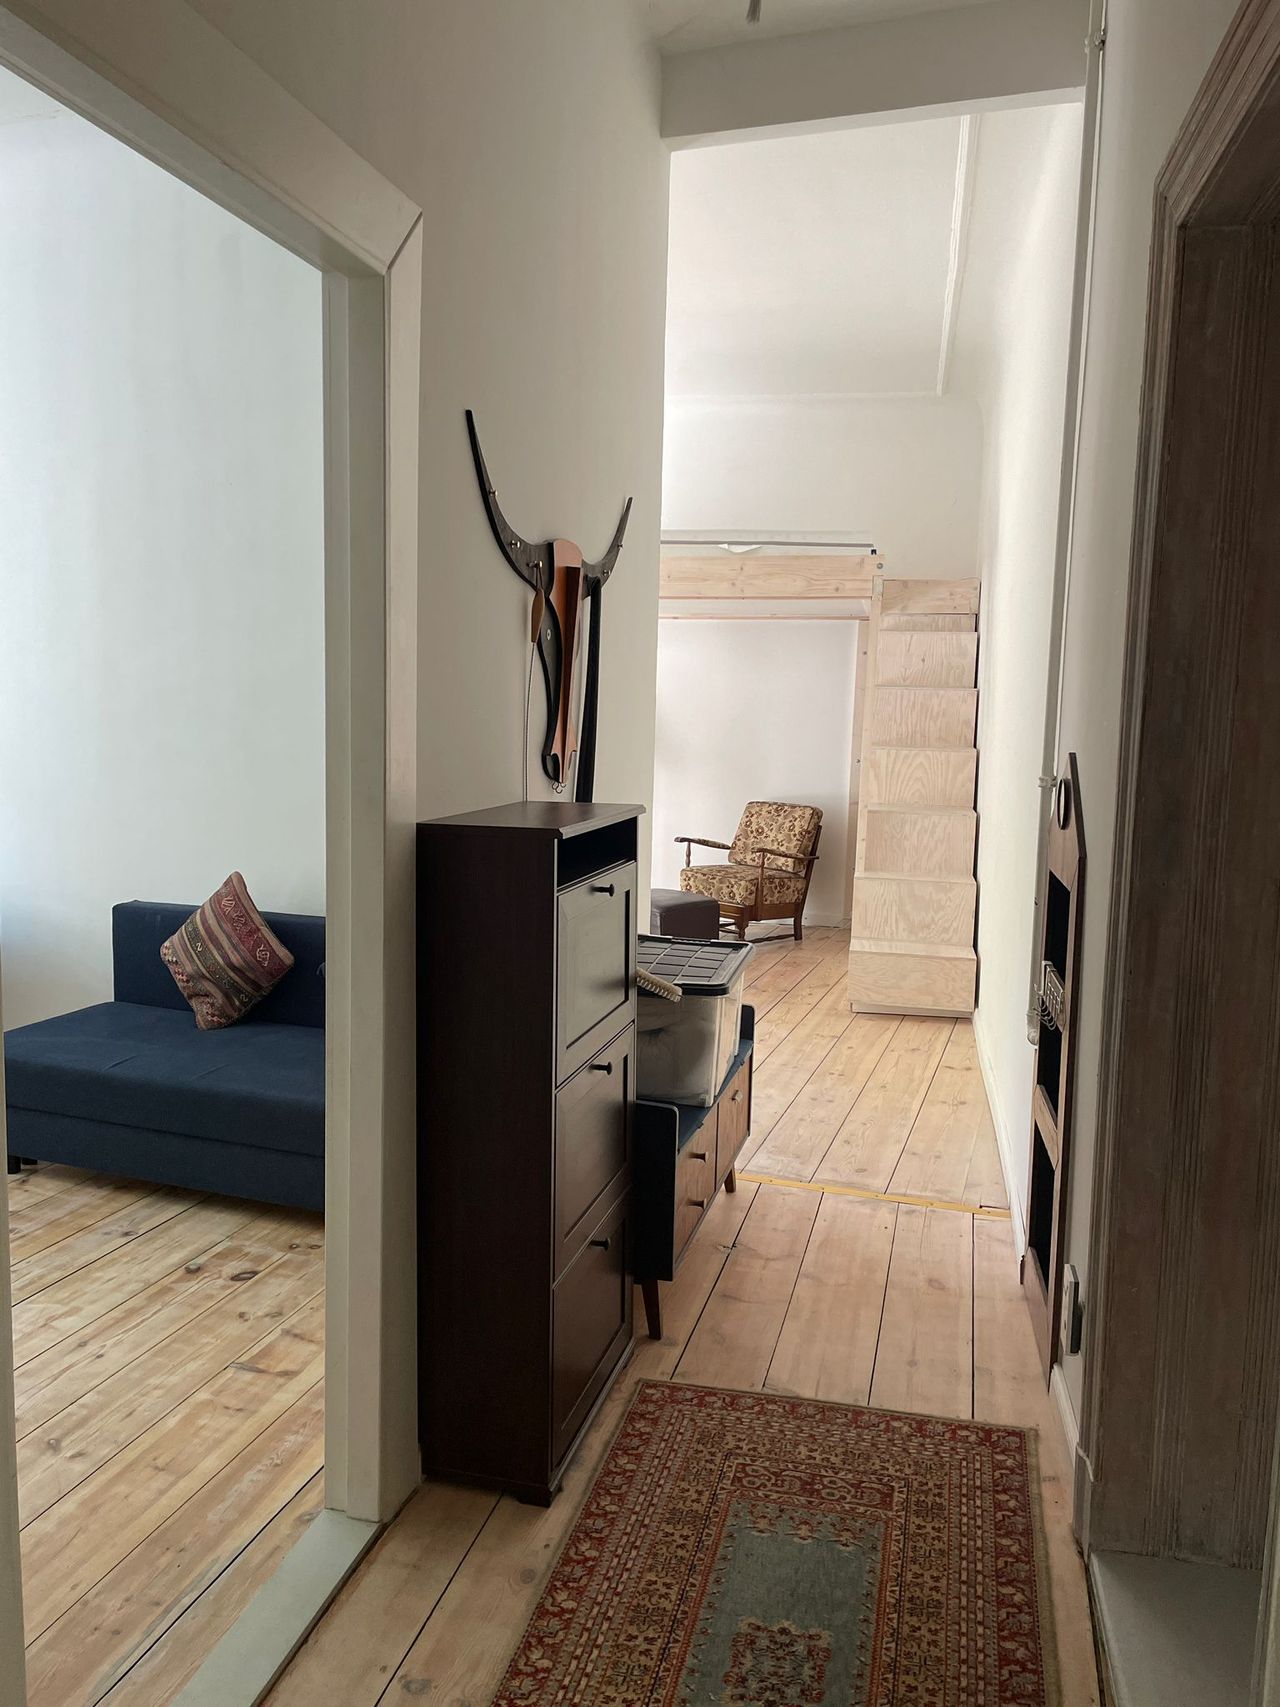 Stylish 1.5 Room Apartment with Balcony near S/U Lichtenberg